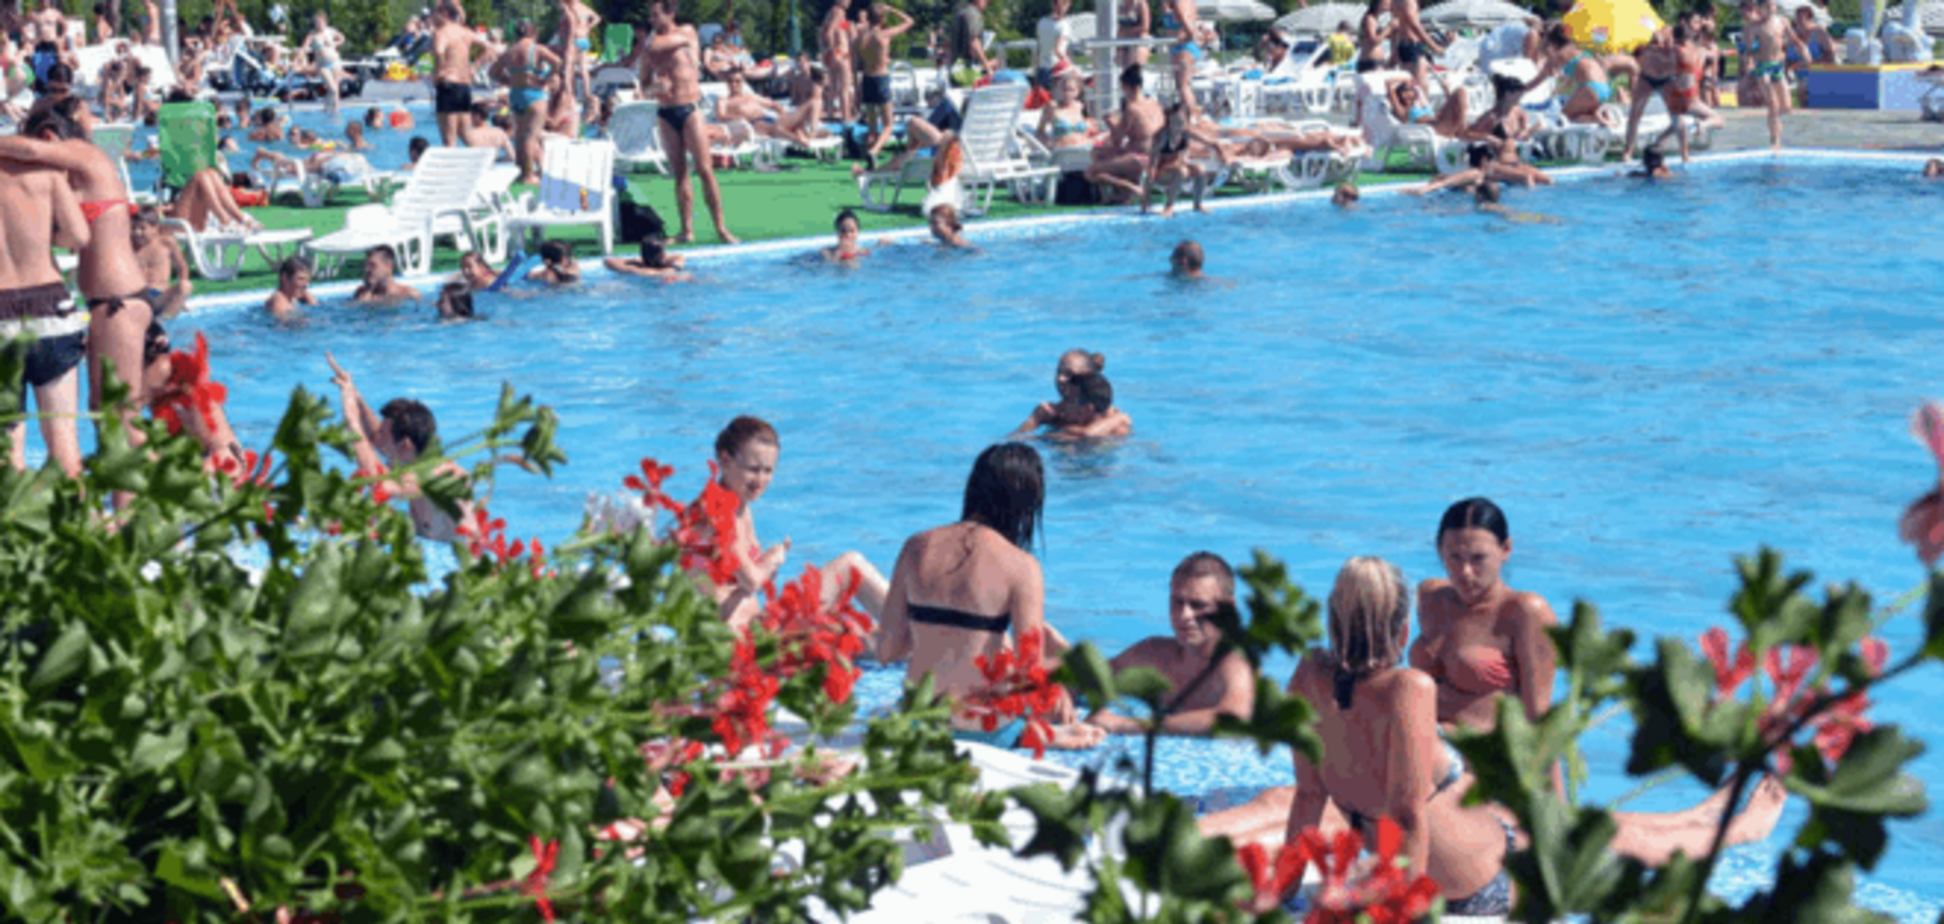 Обыкновенный расизм: экс-мэр Ужгорода открыл аквапарк 'только для белых'